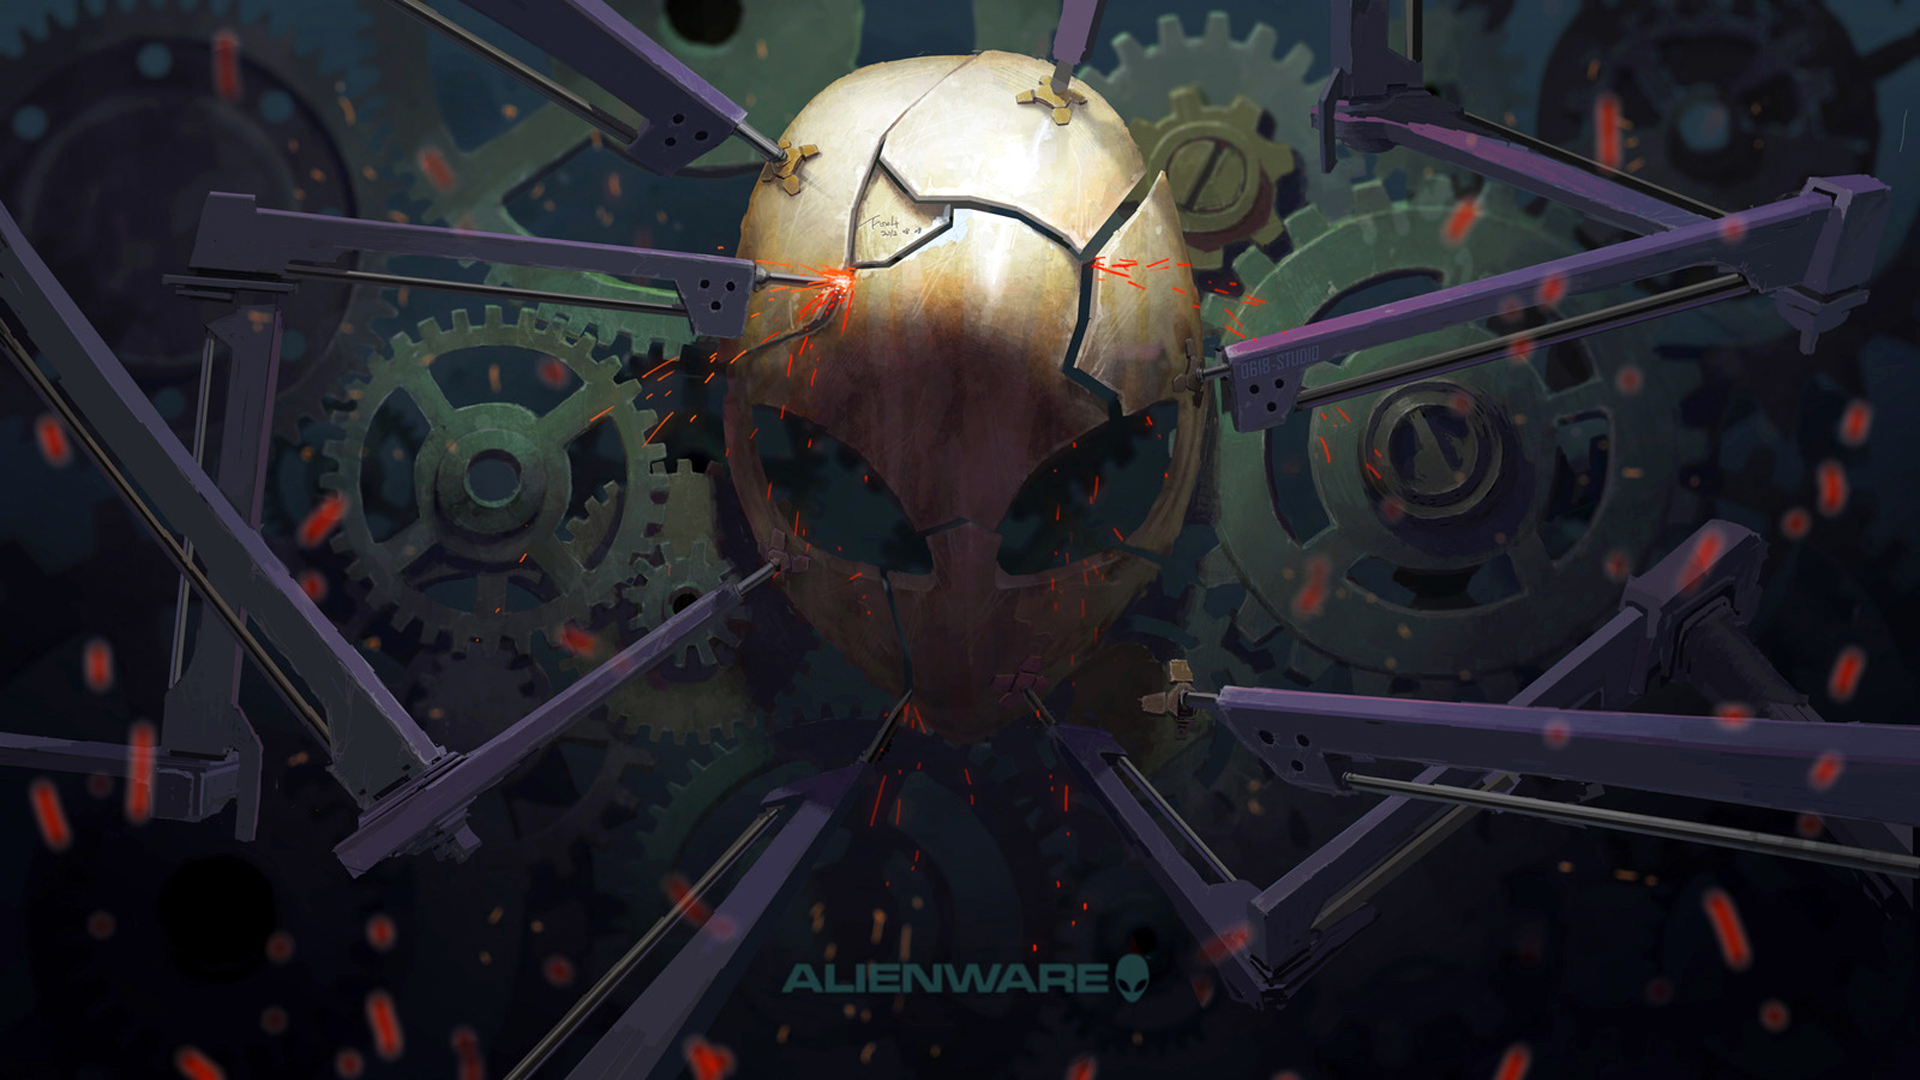 Alienware Broken Mask Cool Logo 1080p Wallpaper Patible